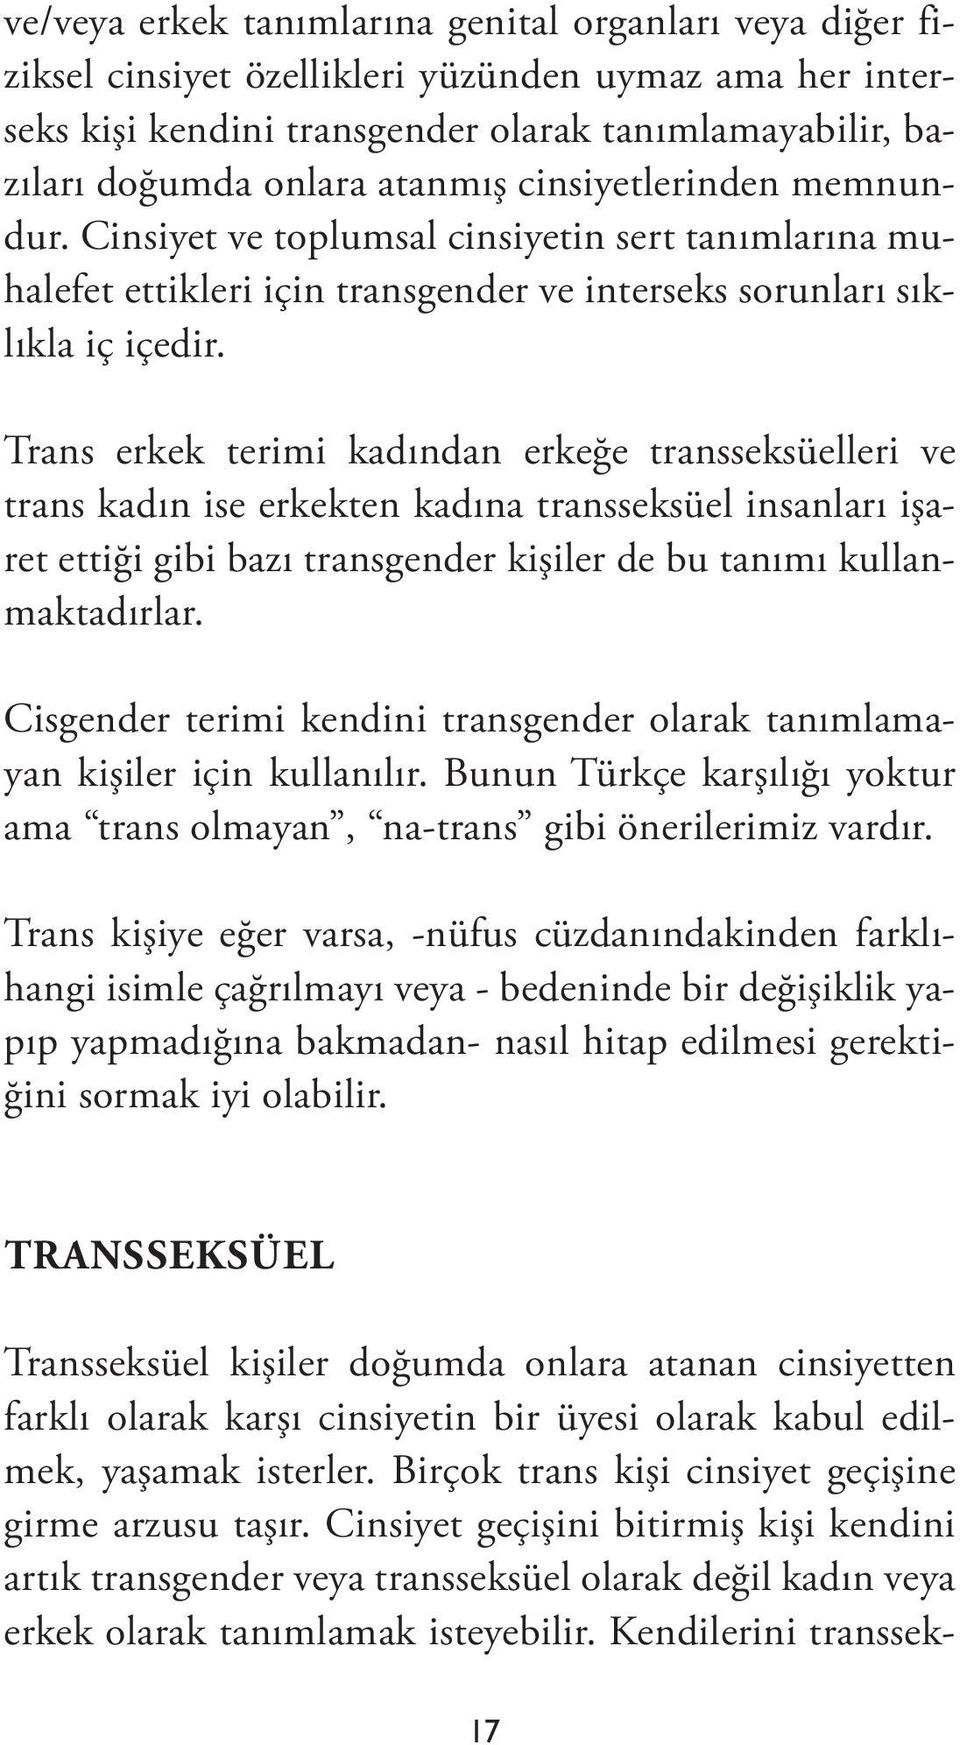 Trans erkek terimi kadından erkeğe transseksüelleri ve trans kadın ise erkekten kadına transseksüel insanları işaret ettiği gibi bazı transgender kişiler de bu tanımı kullanmaktadırlar.